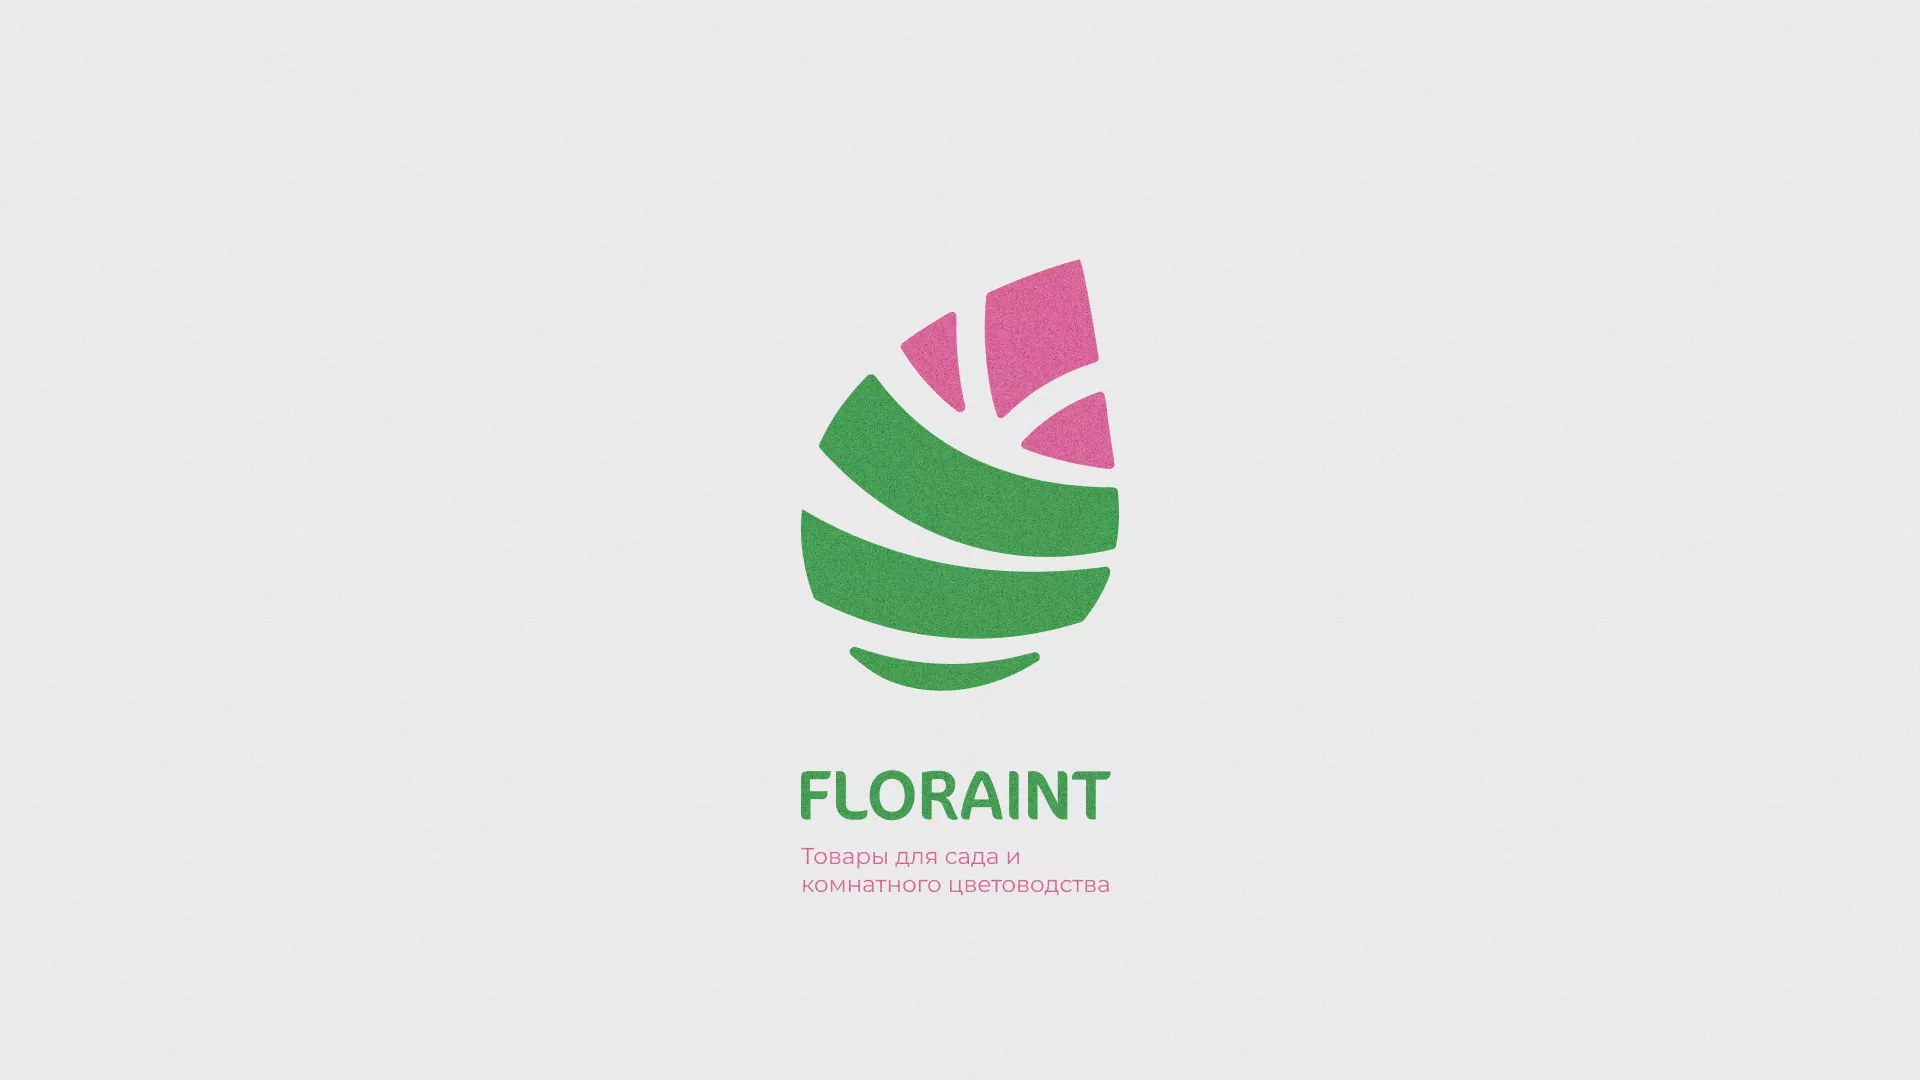 Разработка оформления профиля Instagram для магазина «Floraint» в Новой Ладоге